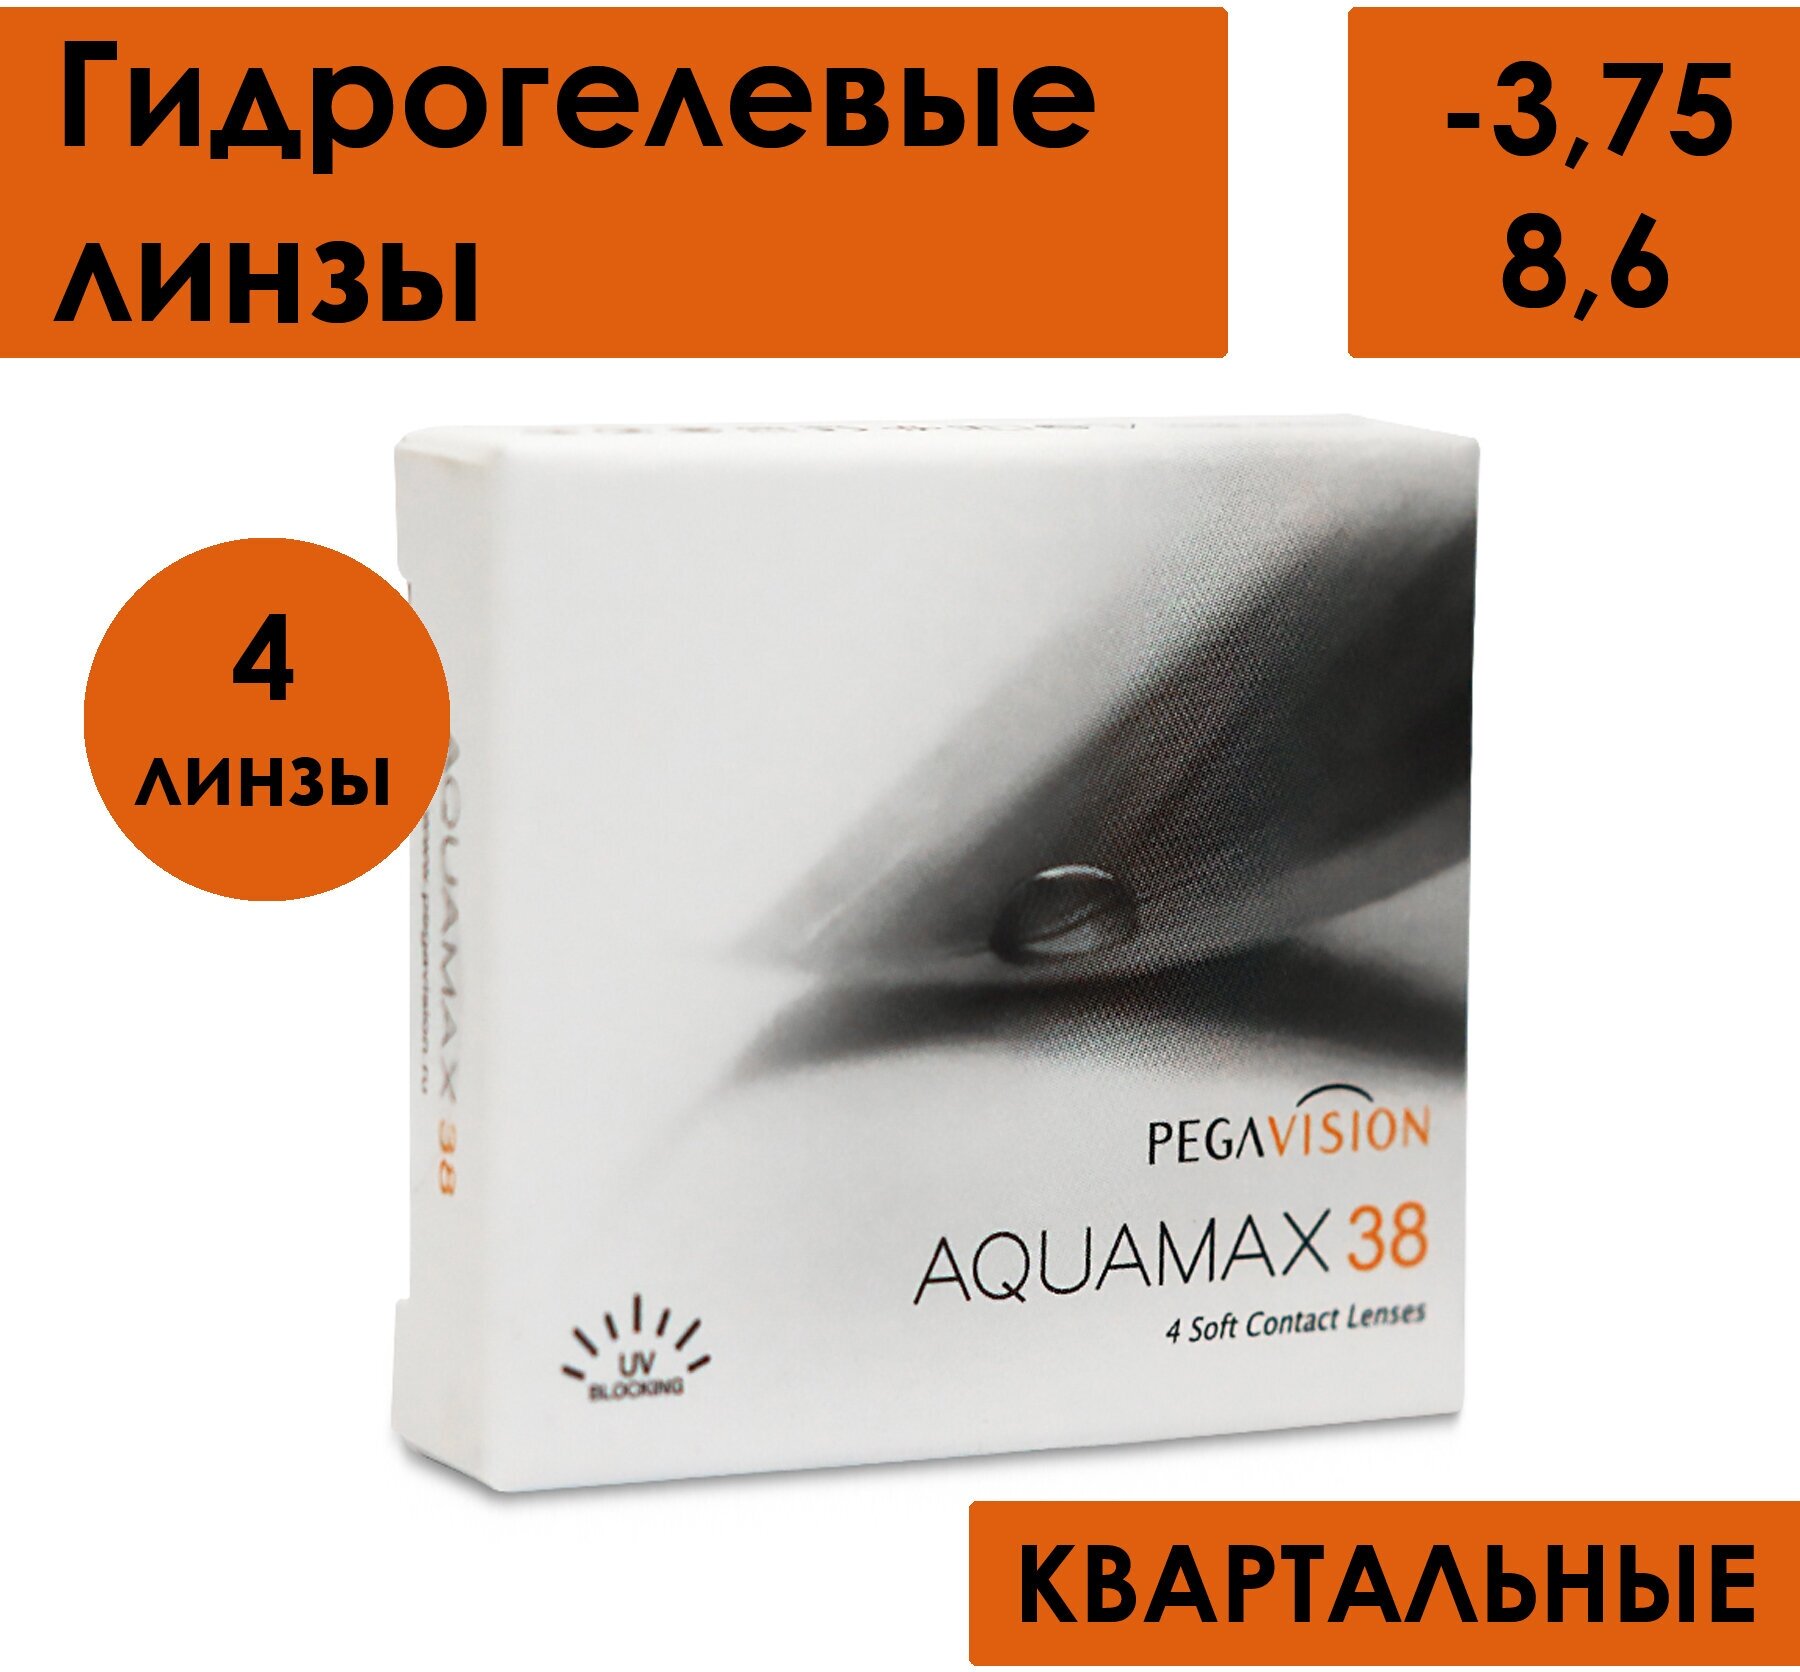 Контактные линзы AQUAMAX 38 -3.75 / 8.6 / 14 / 4 шт./ 3 месяца